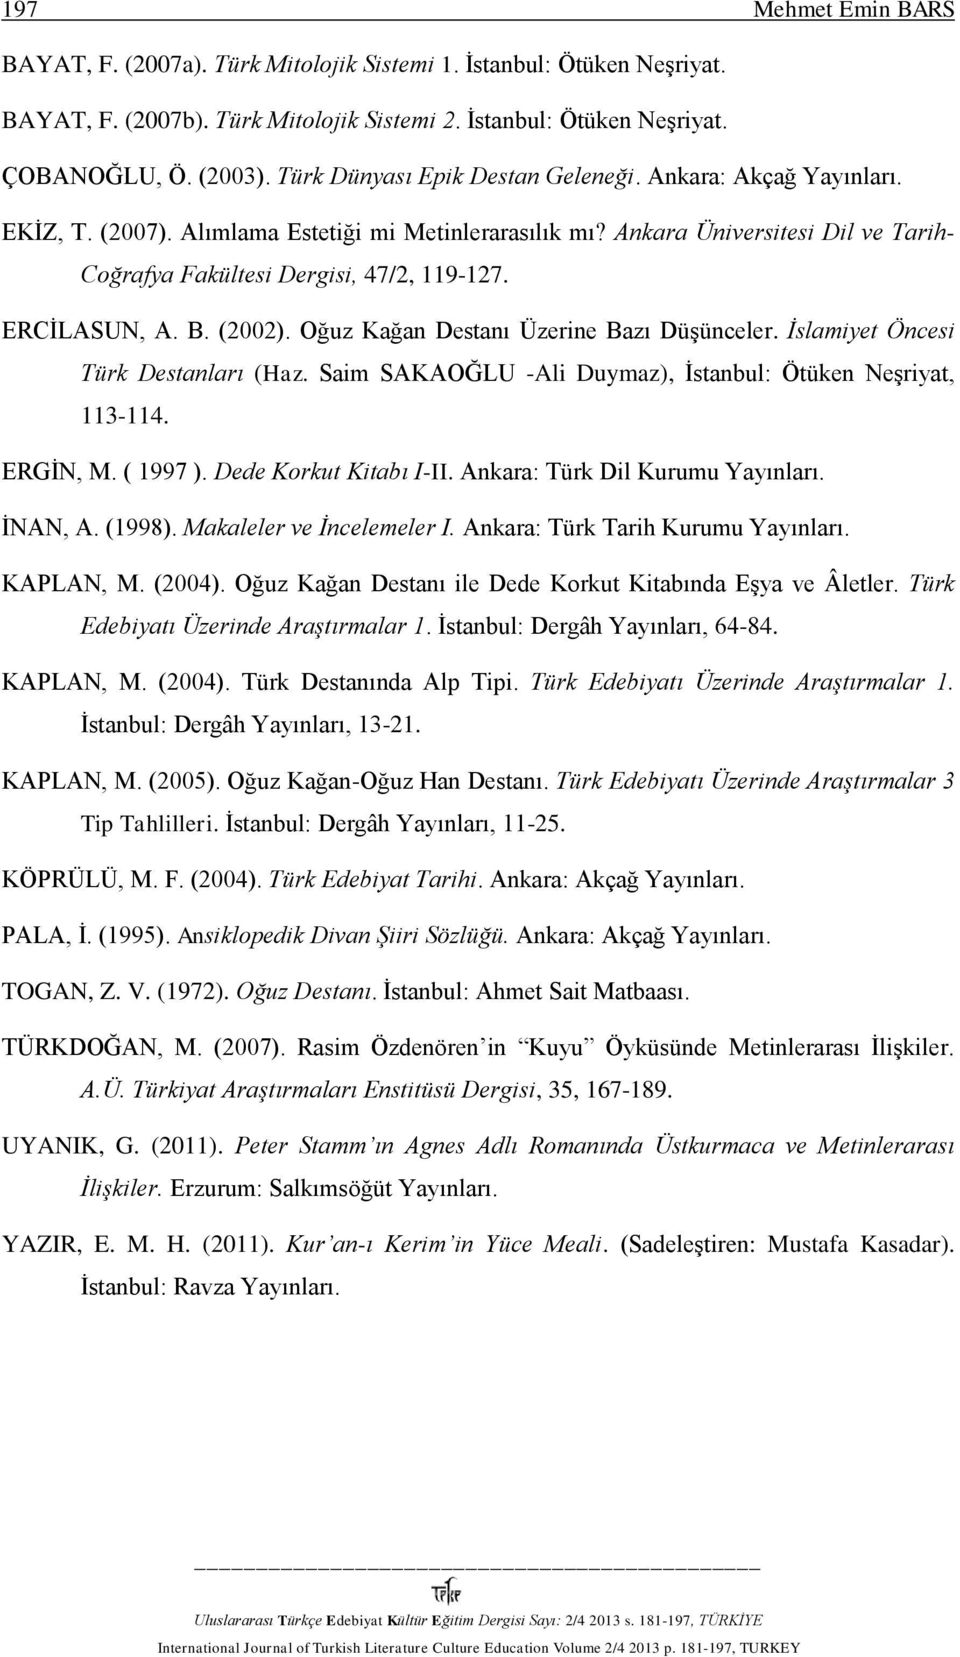 ERCİLASUN, A. B. (2002). Oğuz Kağan Destanı Üzerine Bazı Düşünceler. İslamiyet Öncesi Türk Destanları (Haz. Saim SAKAOĞLU -Ali Duymaz), İstanbul: Ötüken Neşriyat, 113-114. ERGİN, M. ( 1997 ).